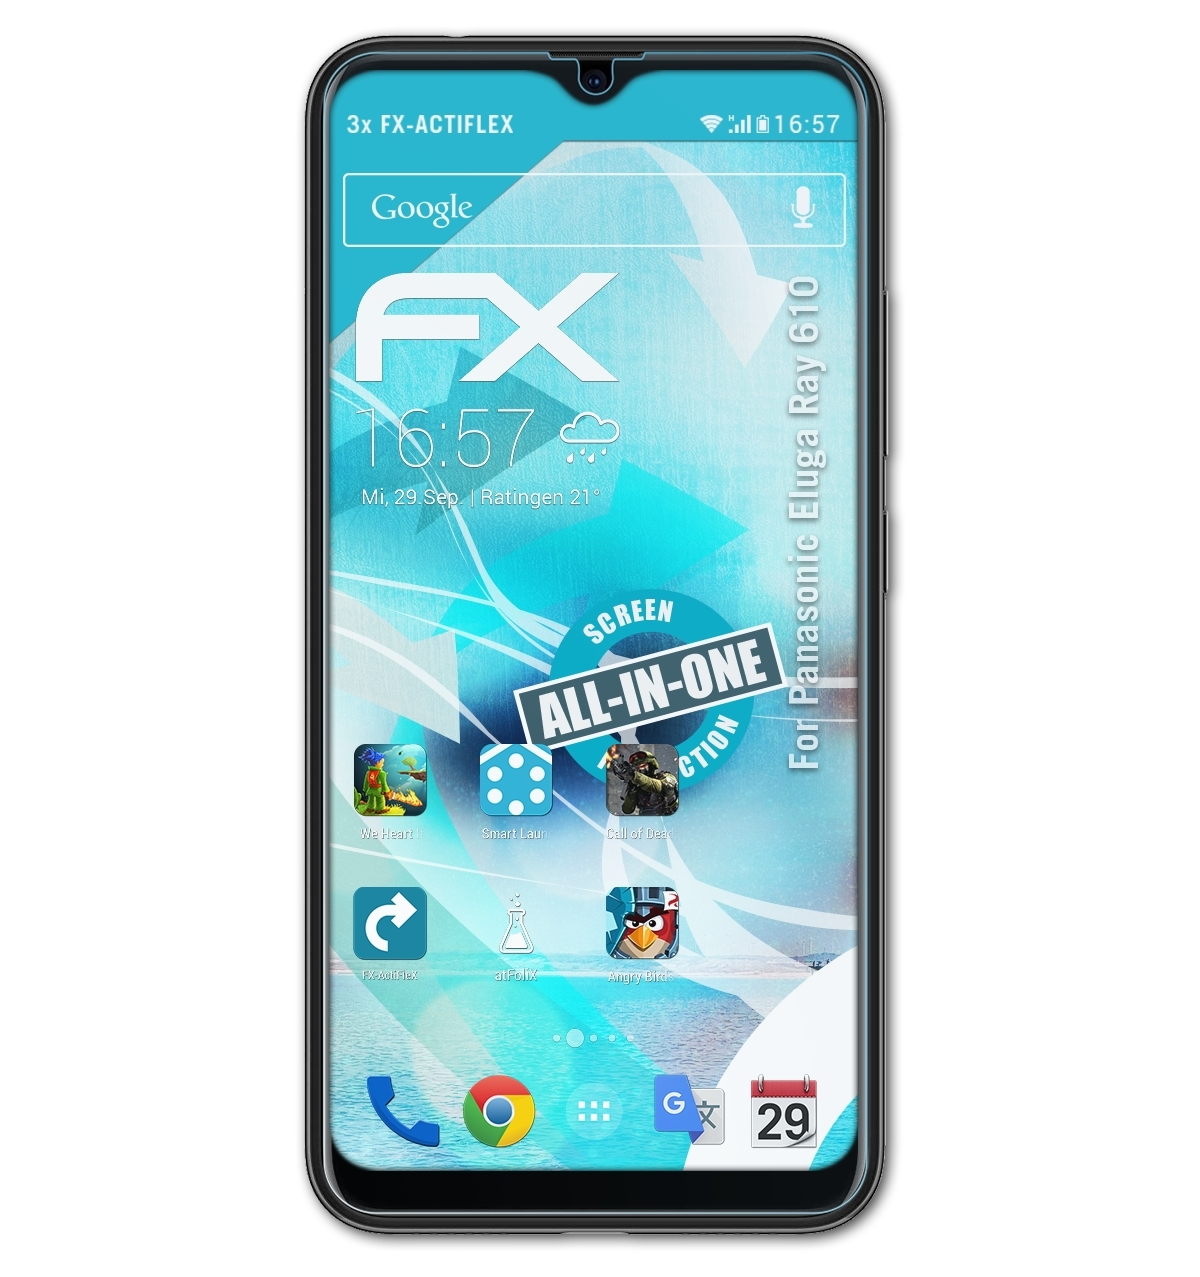 ATFOLIX 3x FX-ActiFleX Displayschutz(für 610) Panasonic Eluga Ray